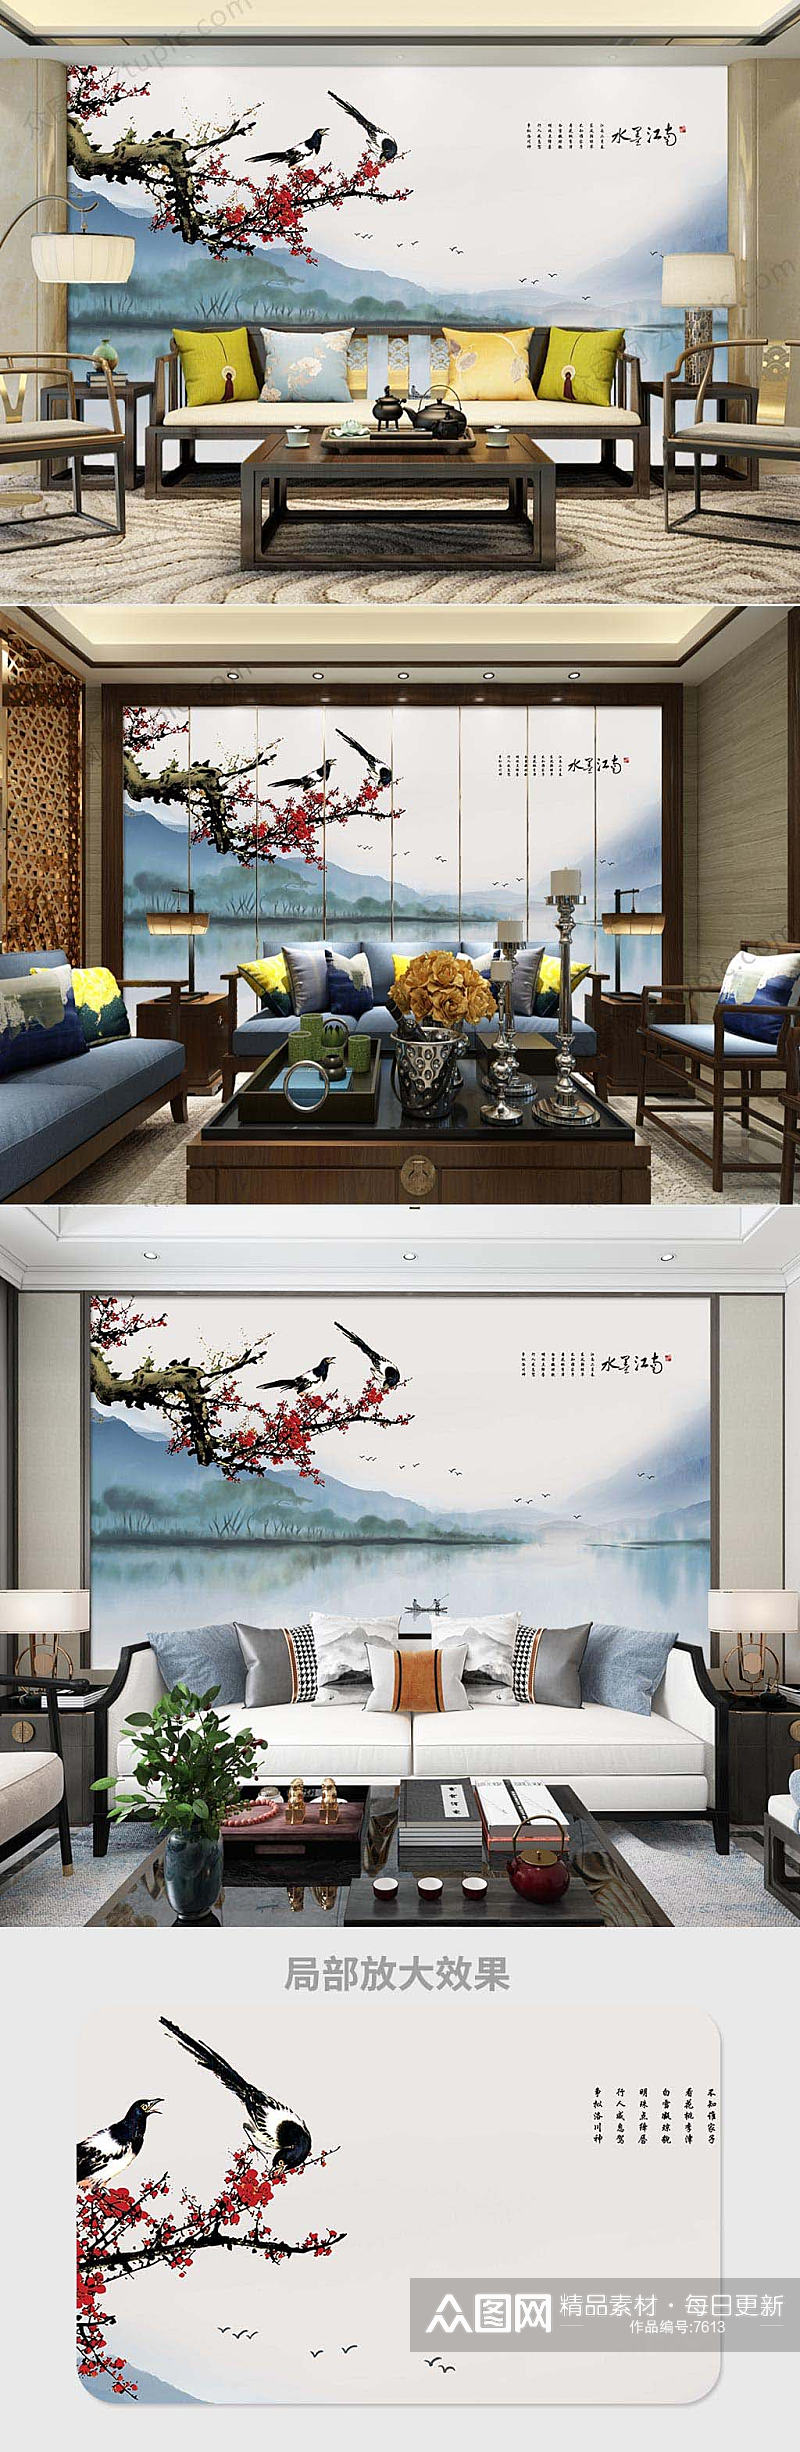 中式手绘花鸟电视背景墙素材